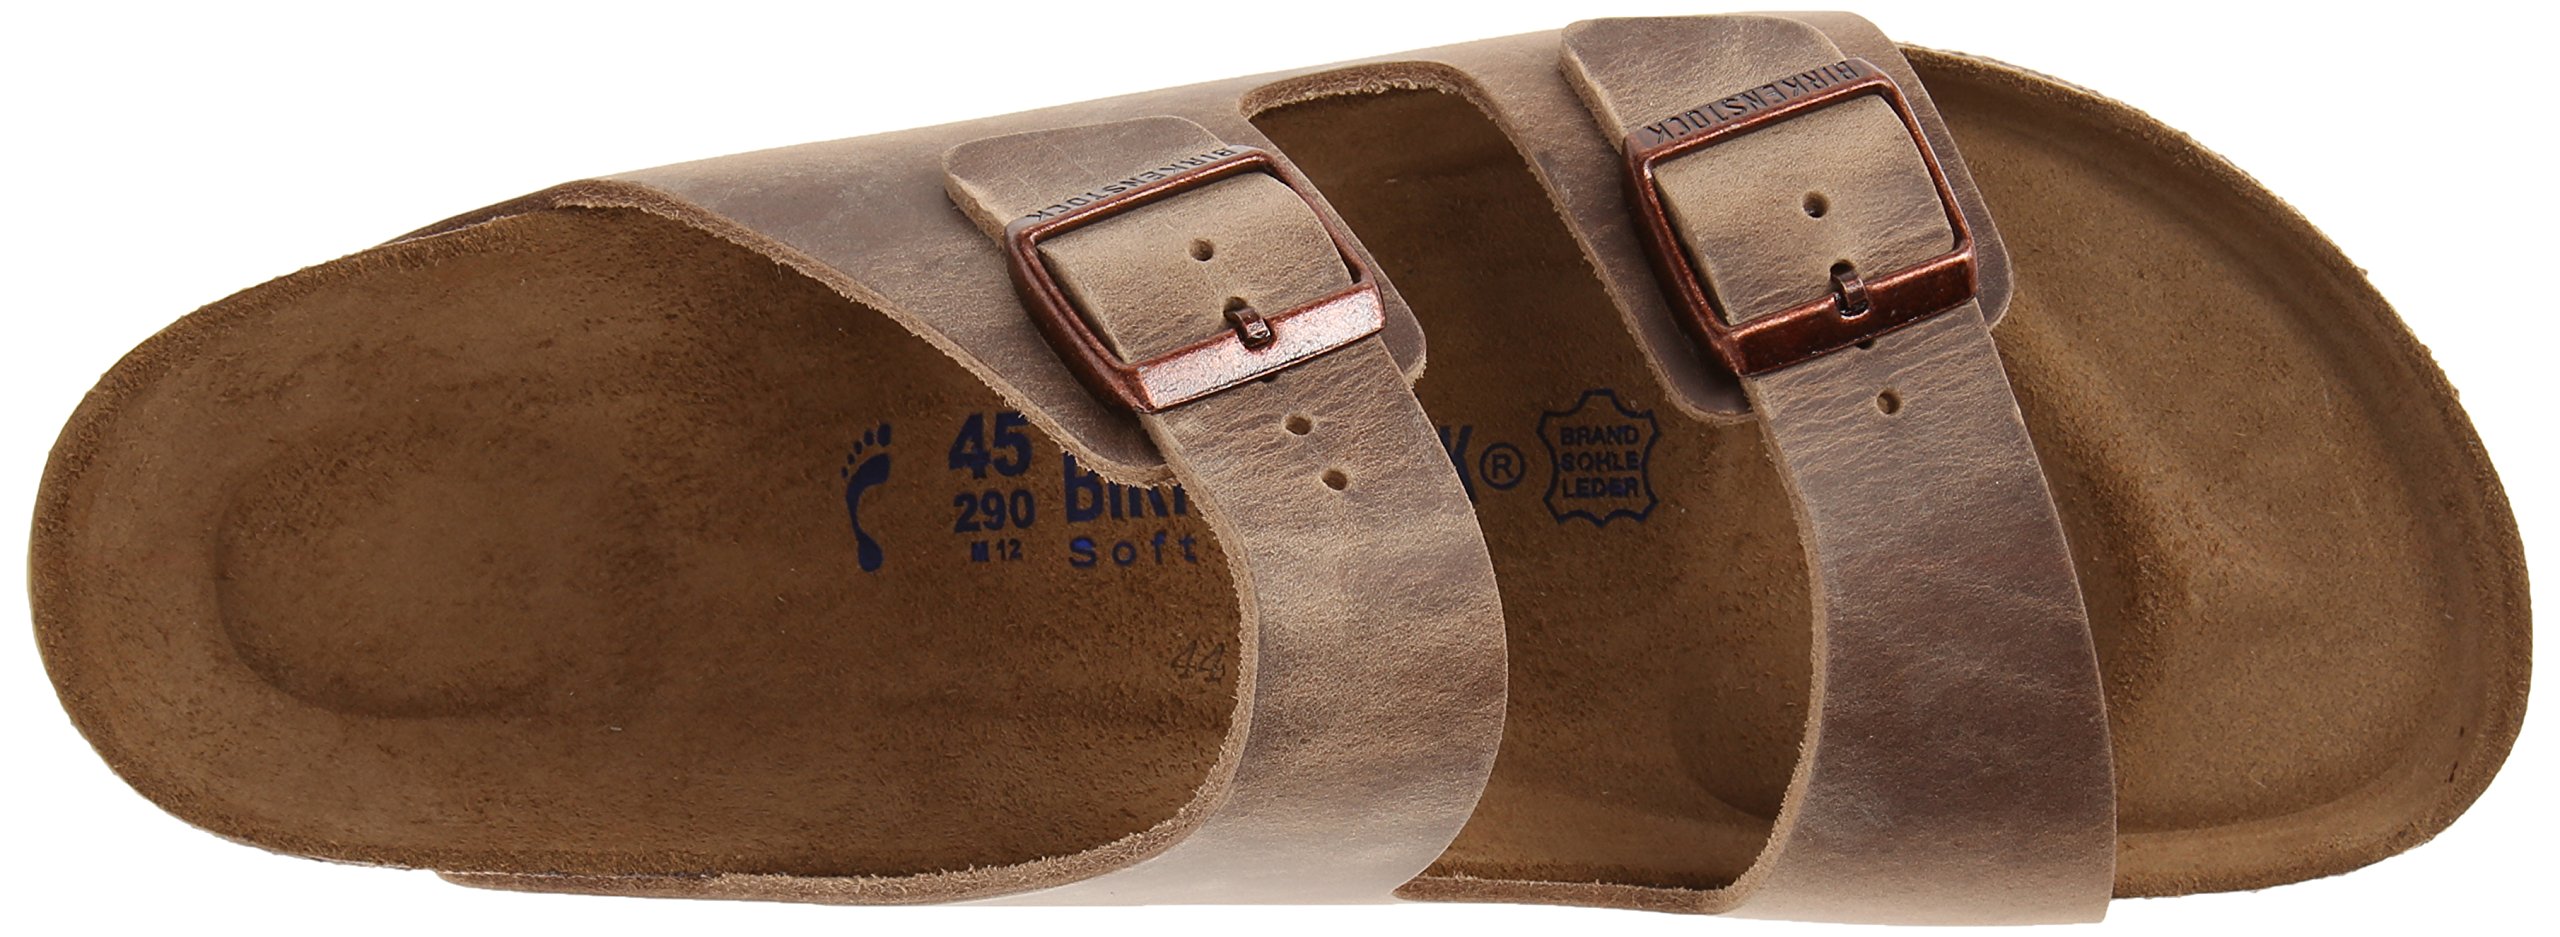 Birkenstock Women's Arizona Soft Sandals